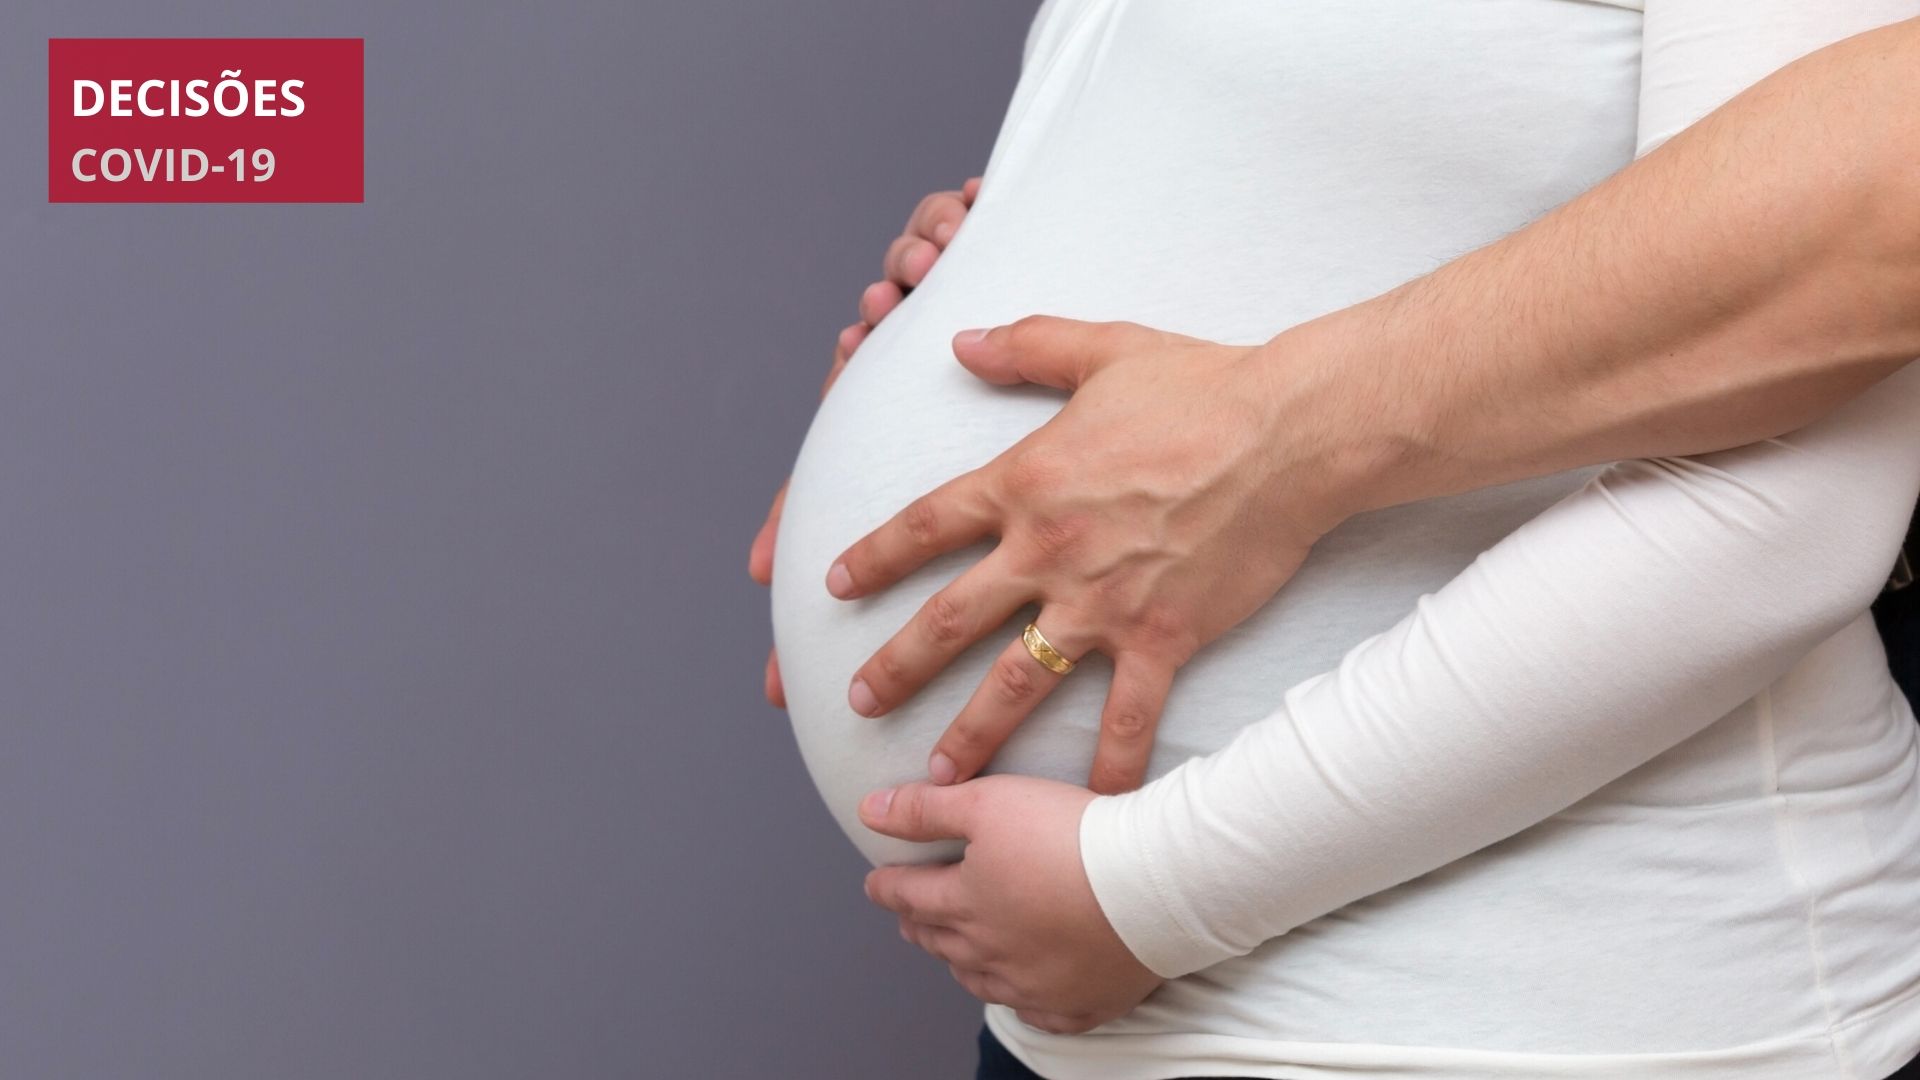 Juíza observa princípio da precaução ao restringir acompanhante por mais de 15 minutos em maternidade de Curitiba que conta apenas com leitos coletivos  